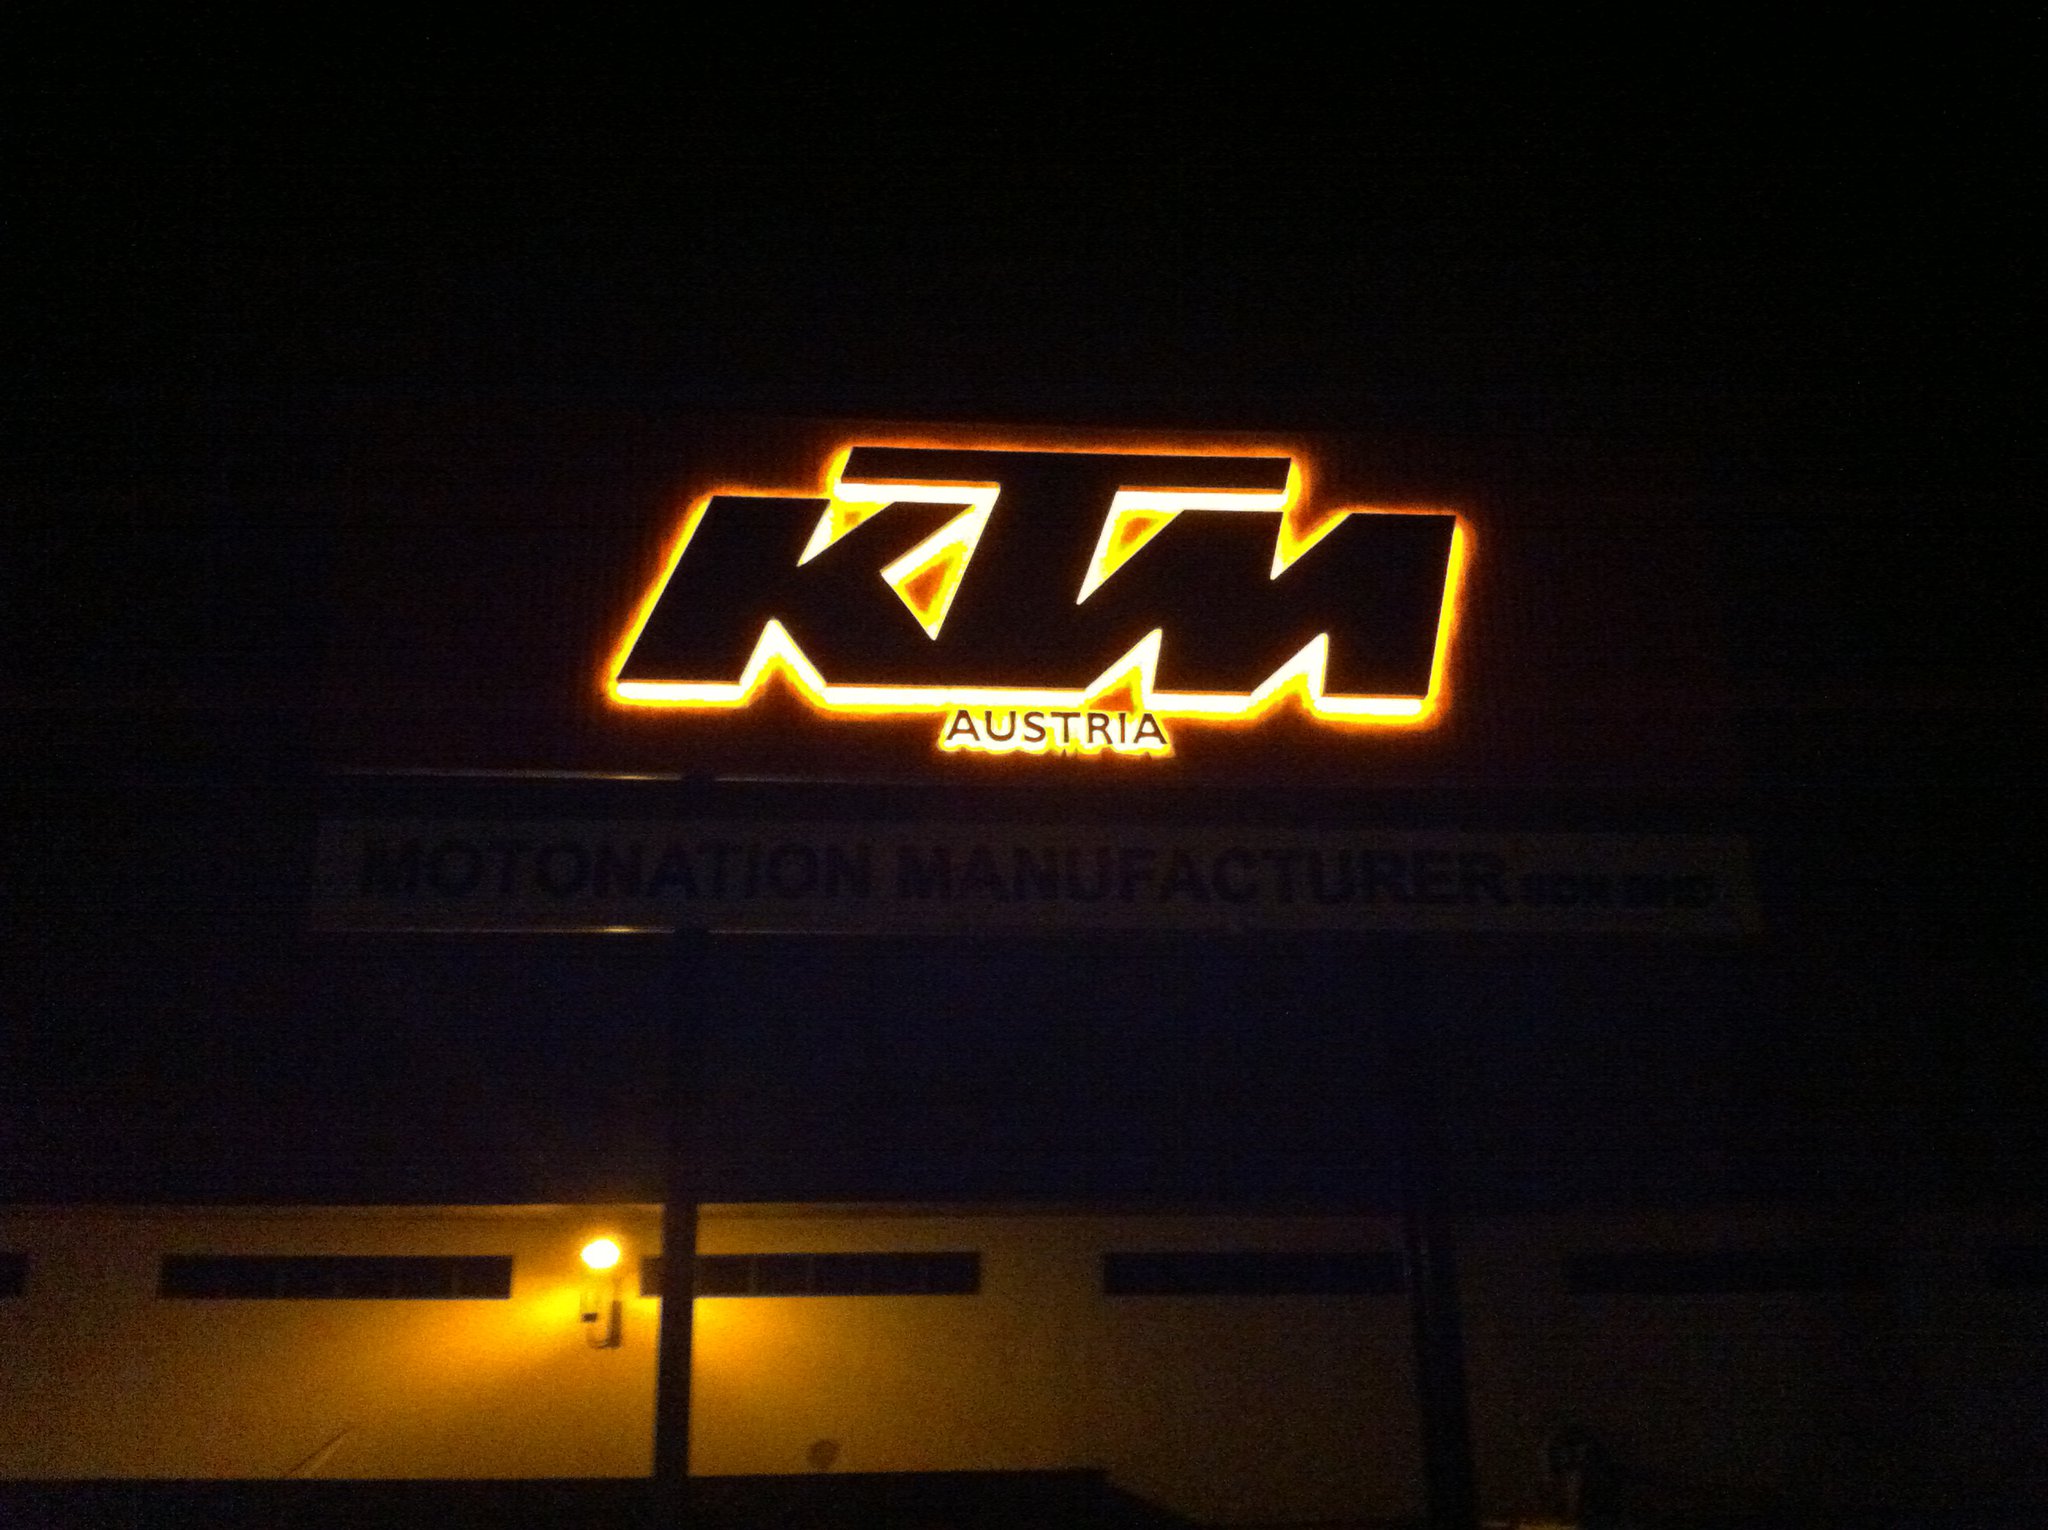 Ktm Motonation Factory